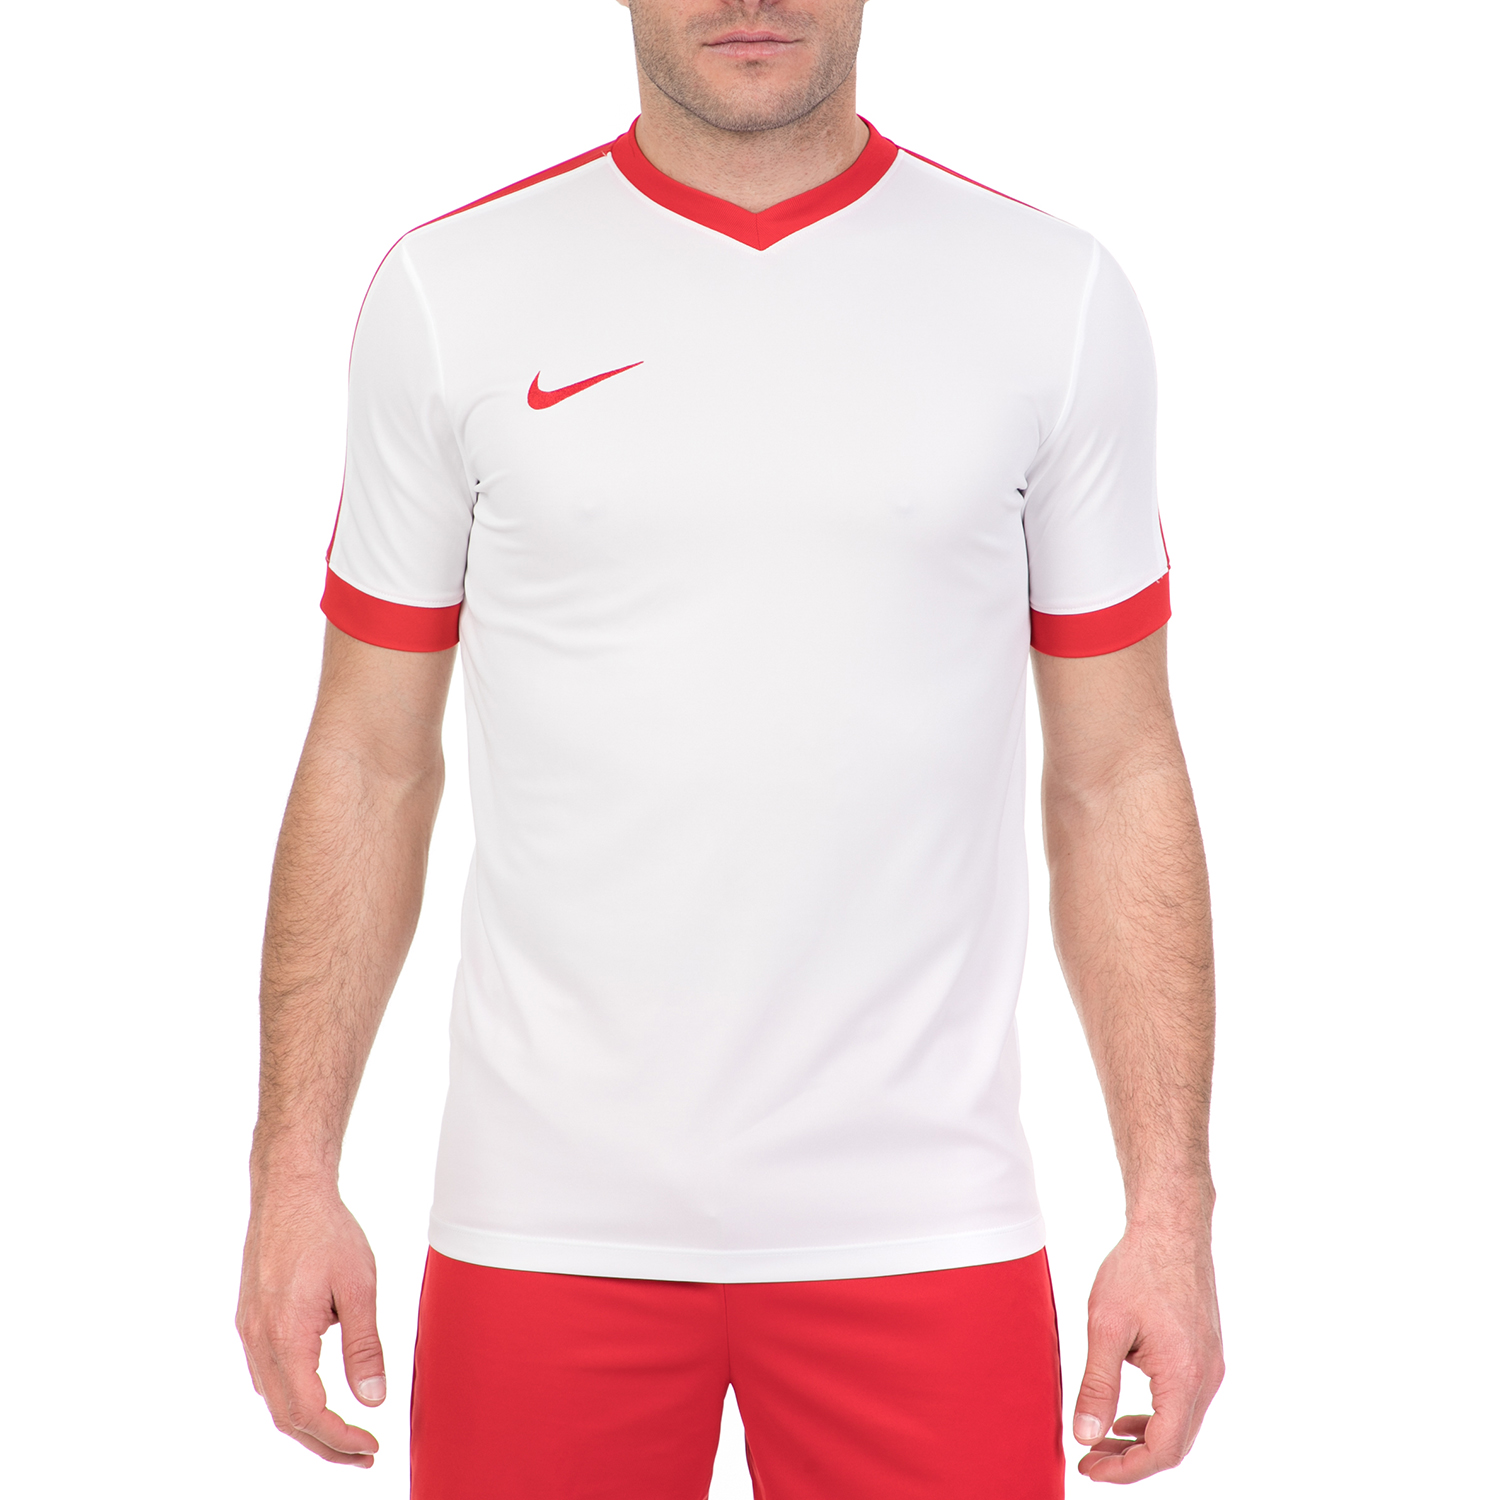 Ανδρικά/Ρούχα/Αθλητικά/T-shirt NIKE - Ανδρική κοντομάνικη μπλούζα NIKE STRIKER IV λευκή